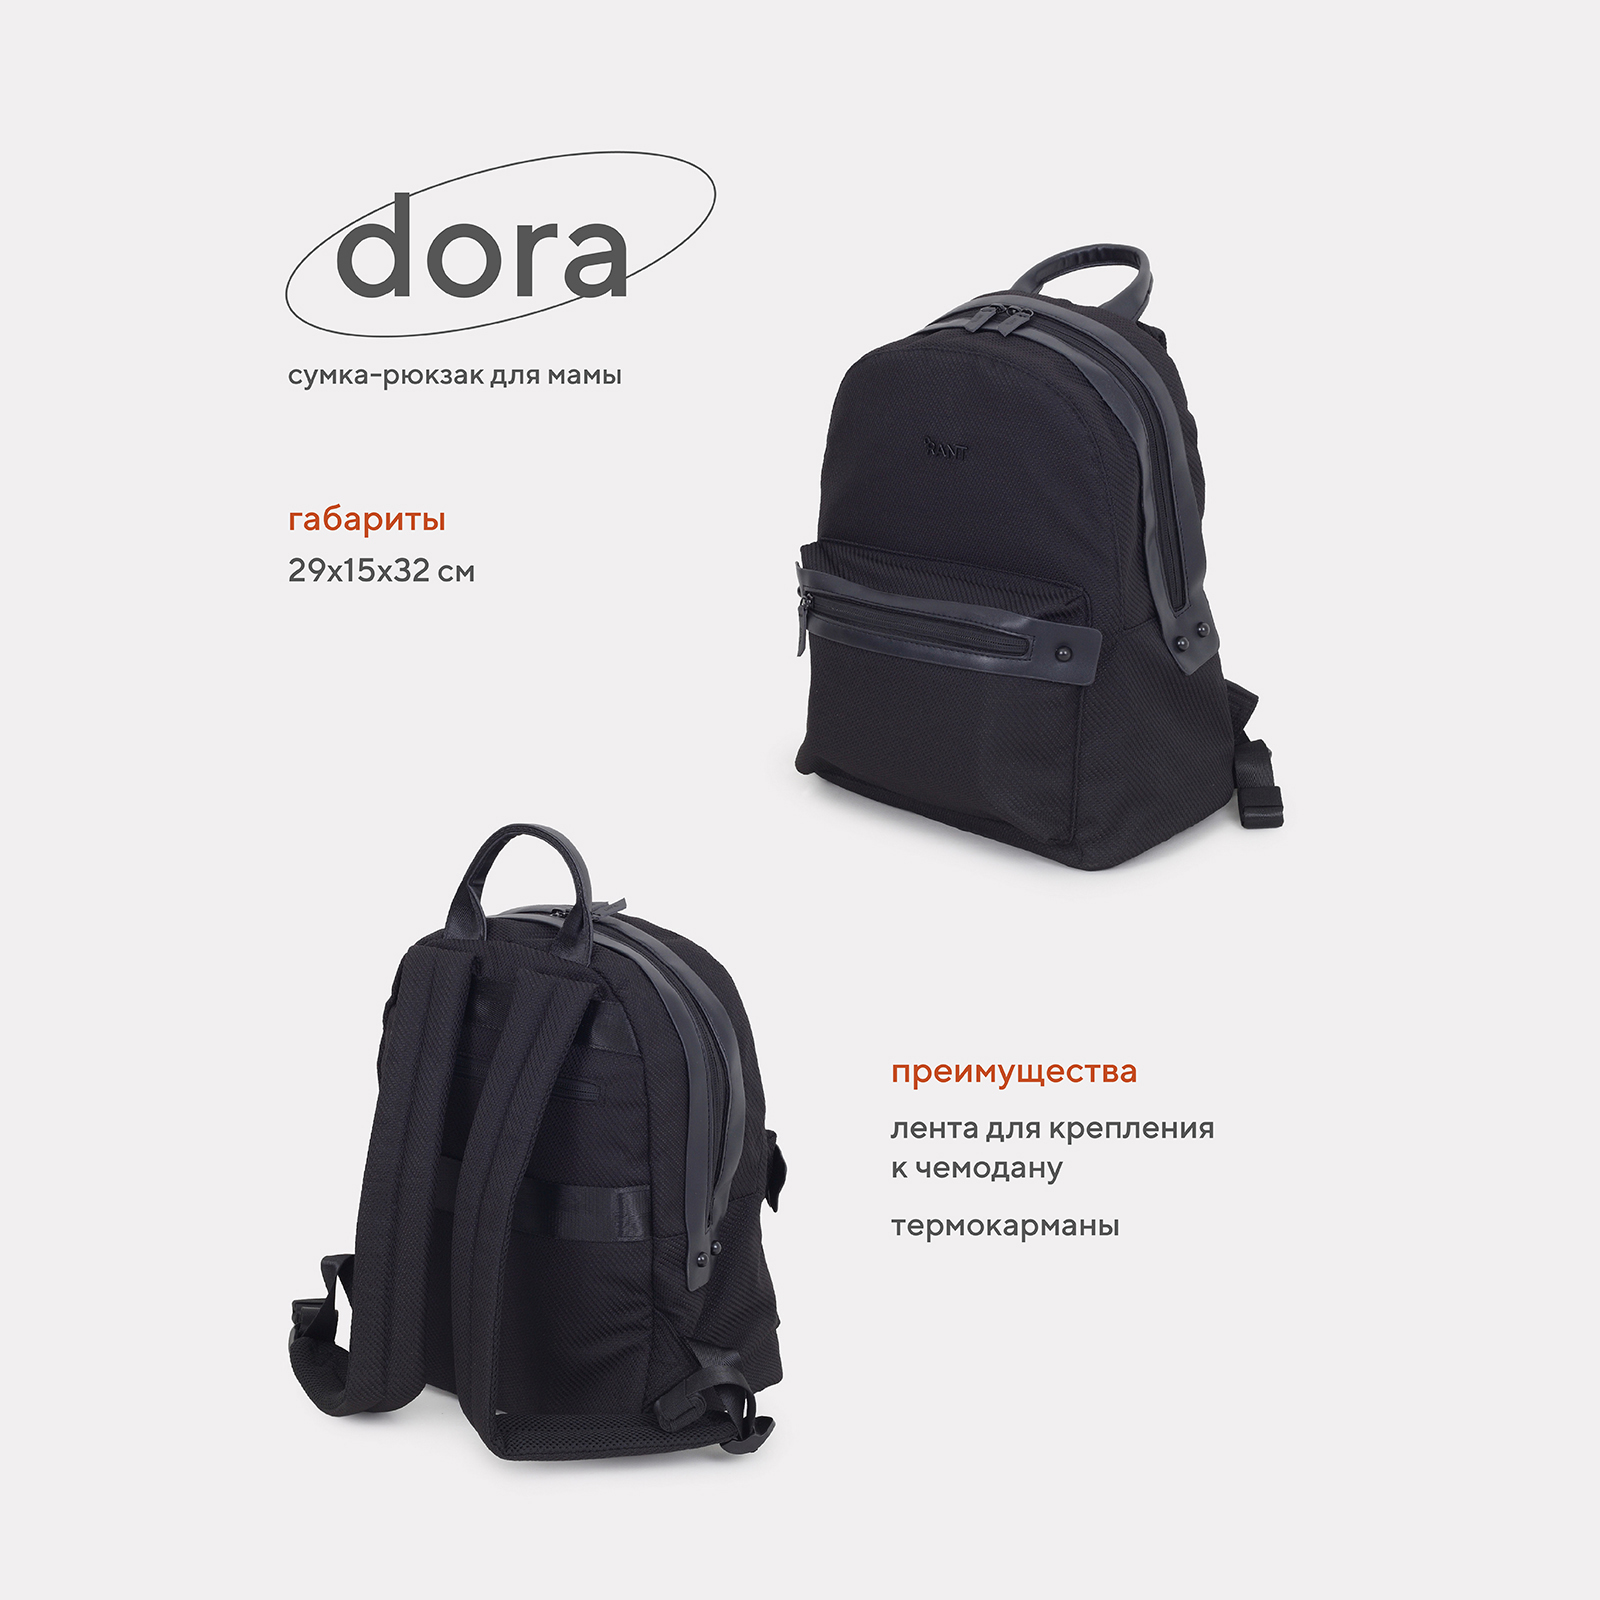 Сумка-рюкзак для мамы RANT Dora RB009 Black сумка рюкзак для мамы easygrow vandra bag black pu 10200115